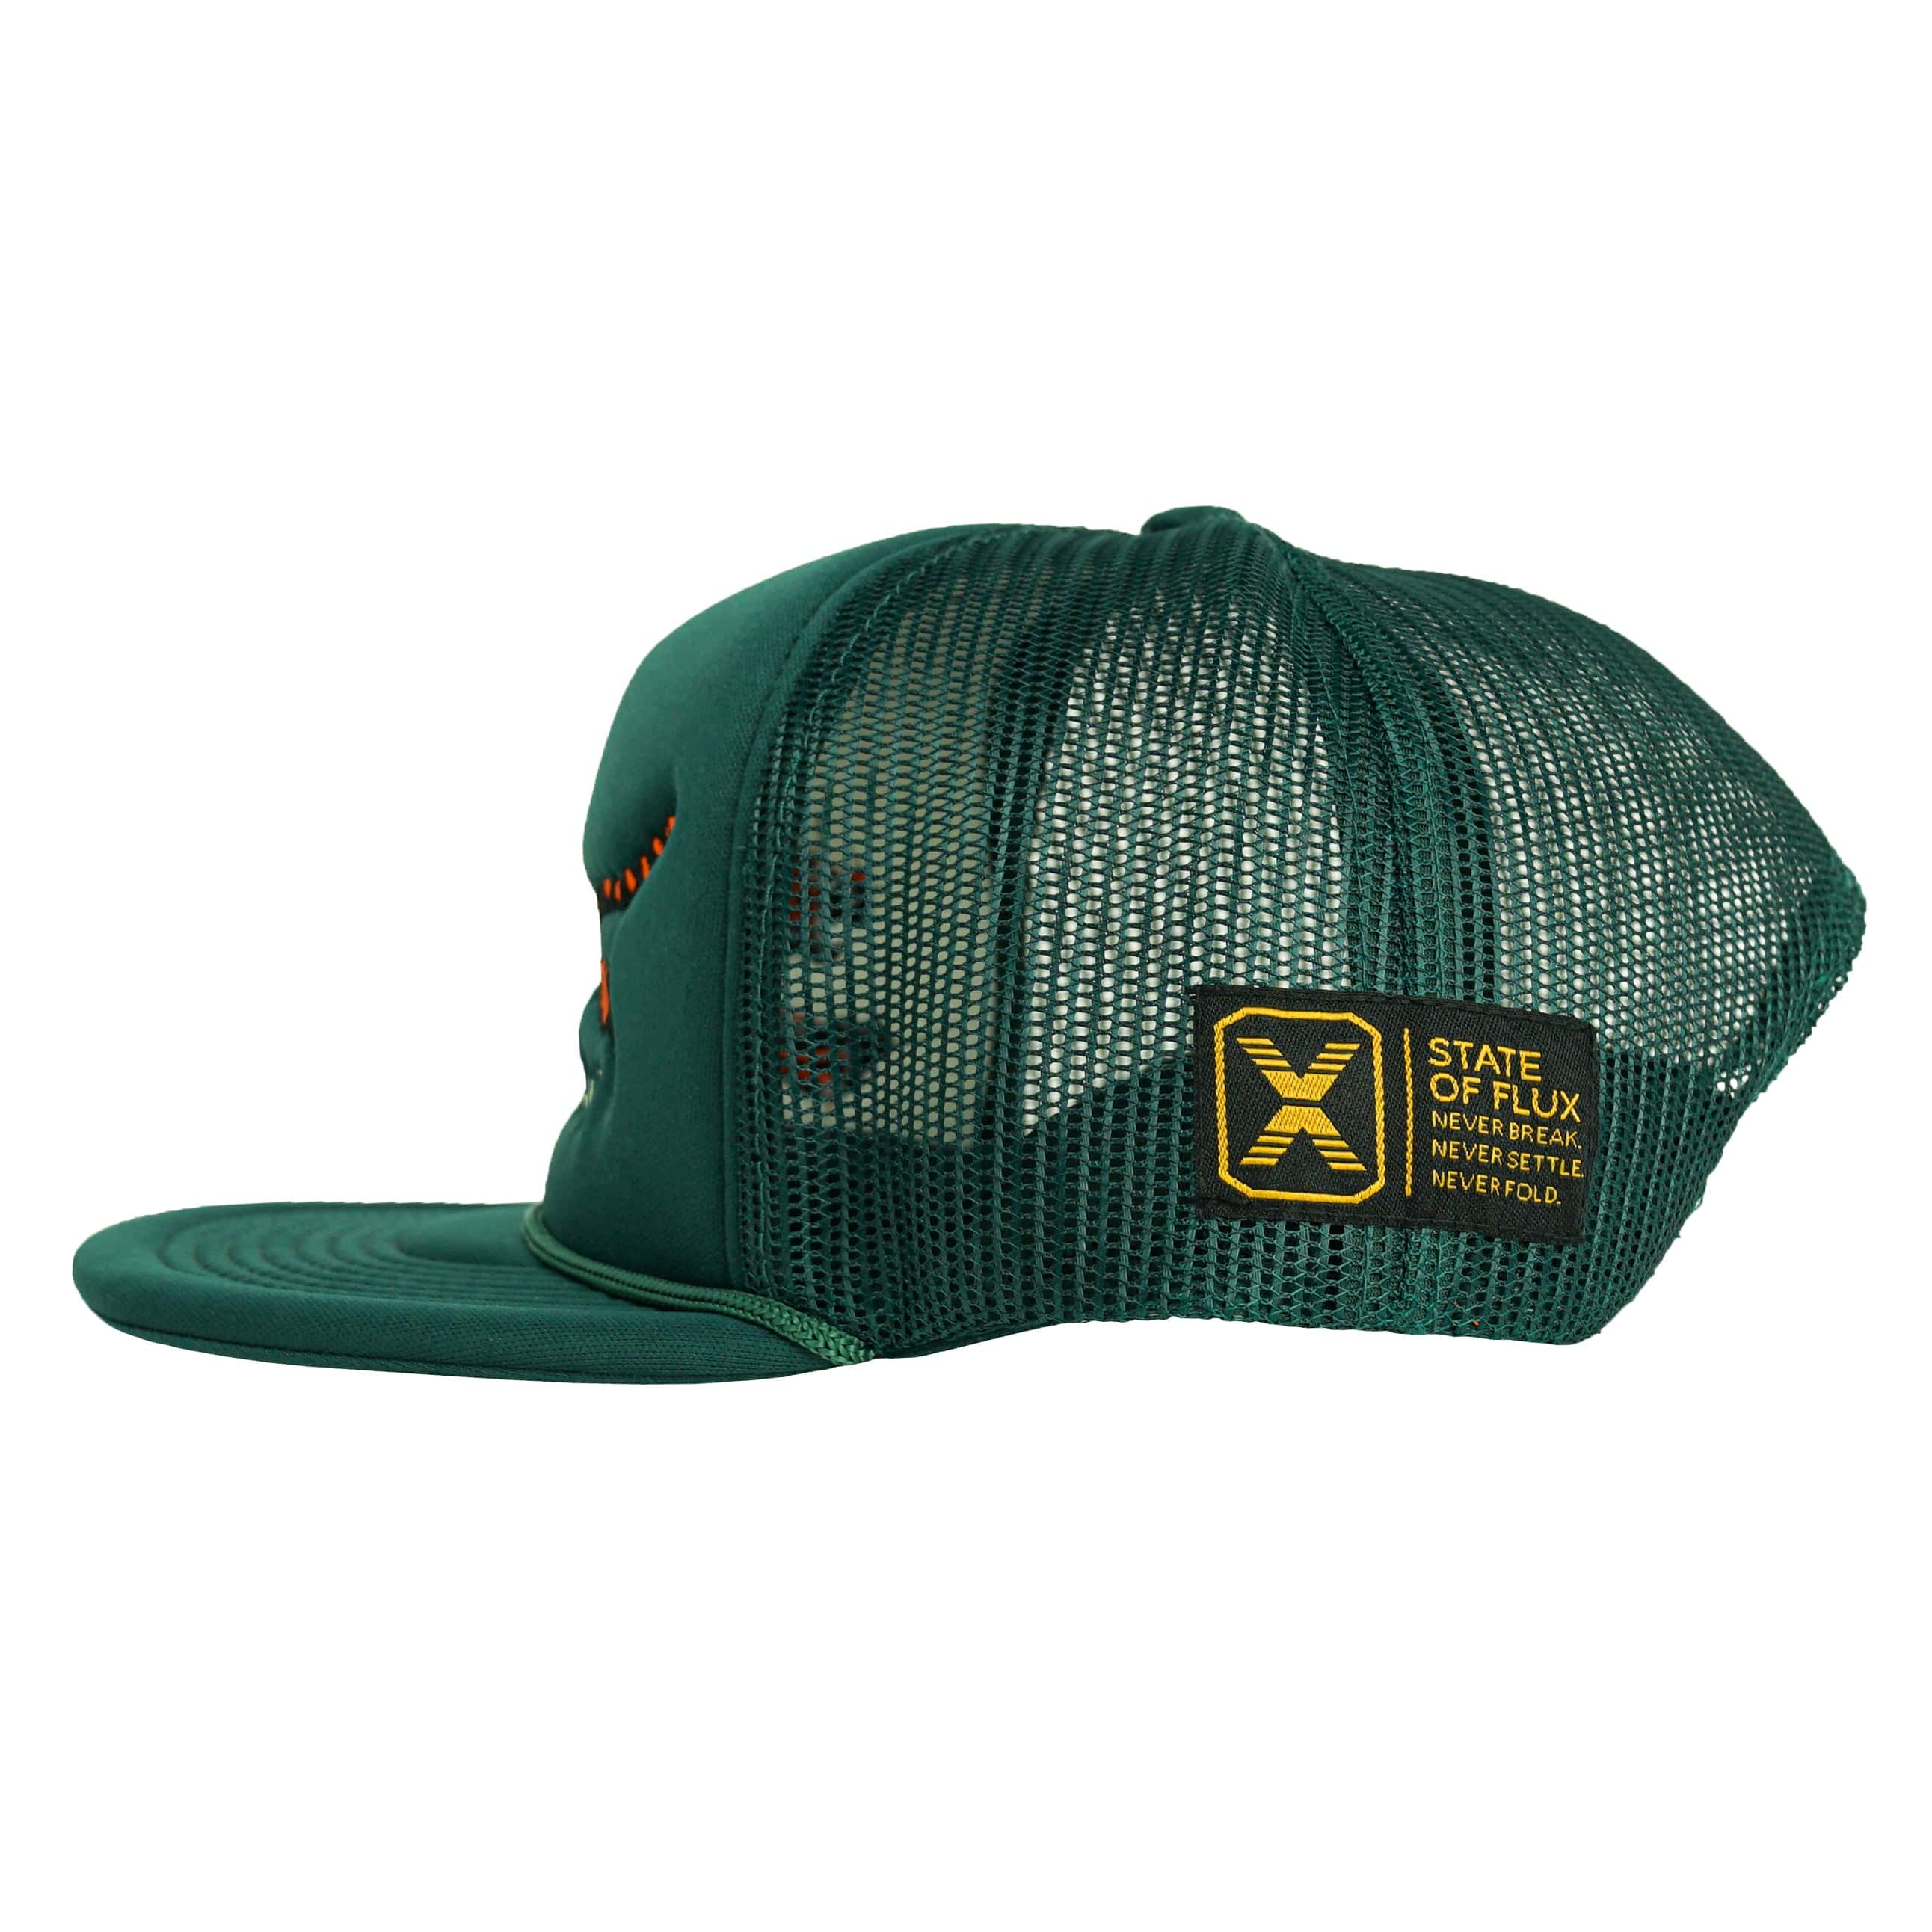 SOF Mojo Foam Trucker Hat in pine green